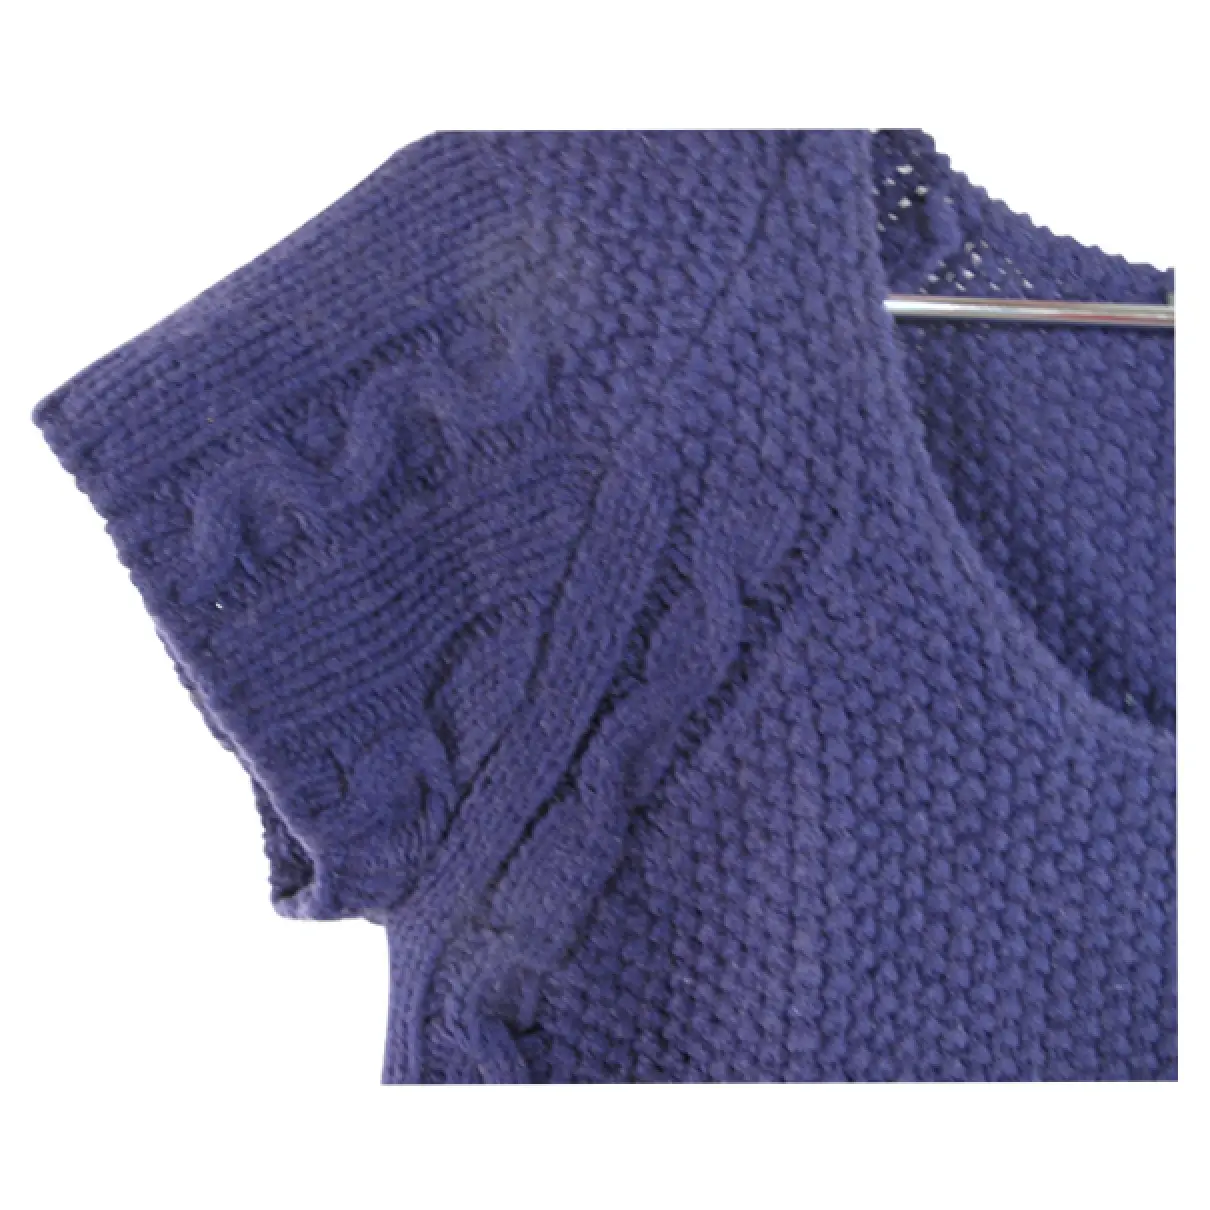 Bel Air Wool jumper for sale